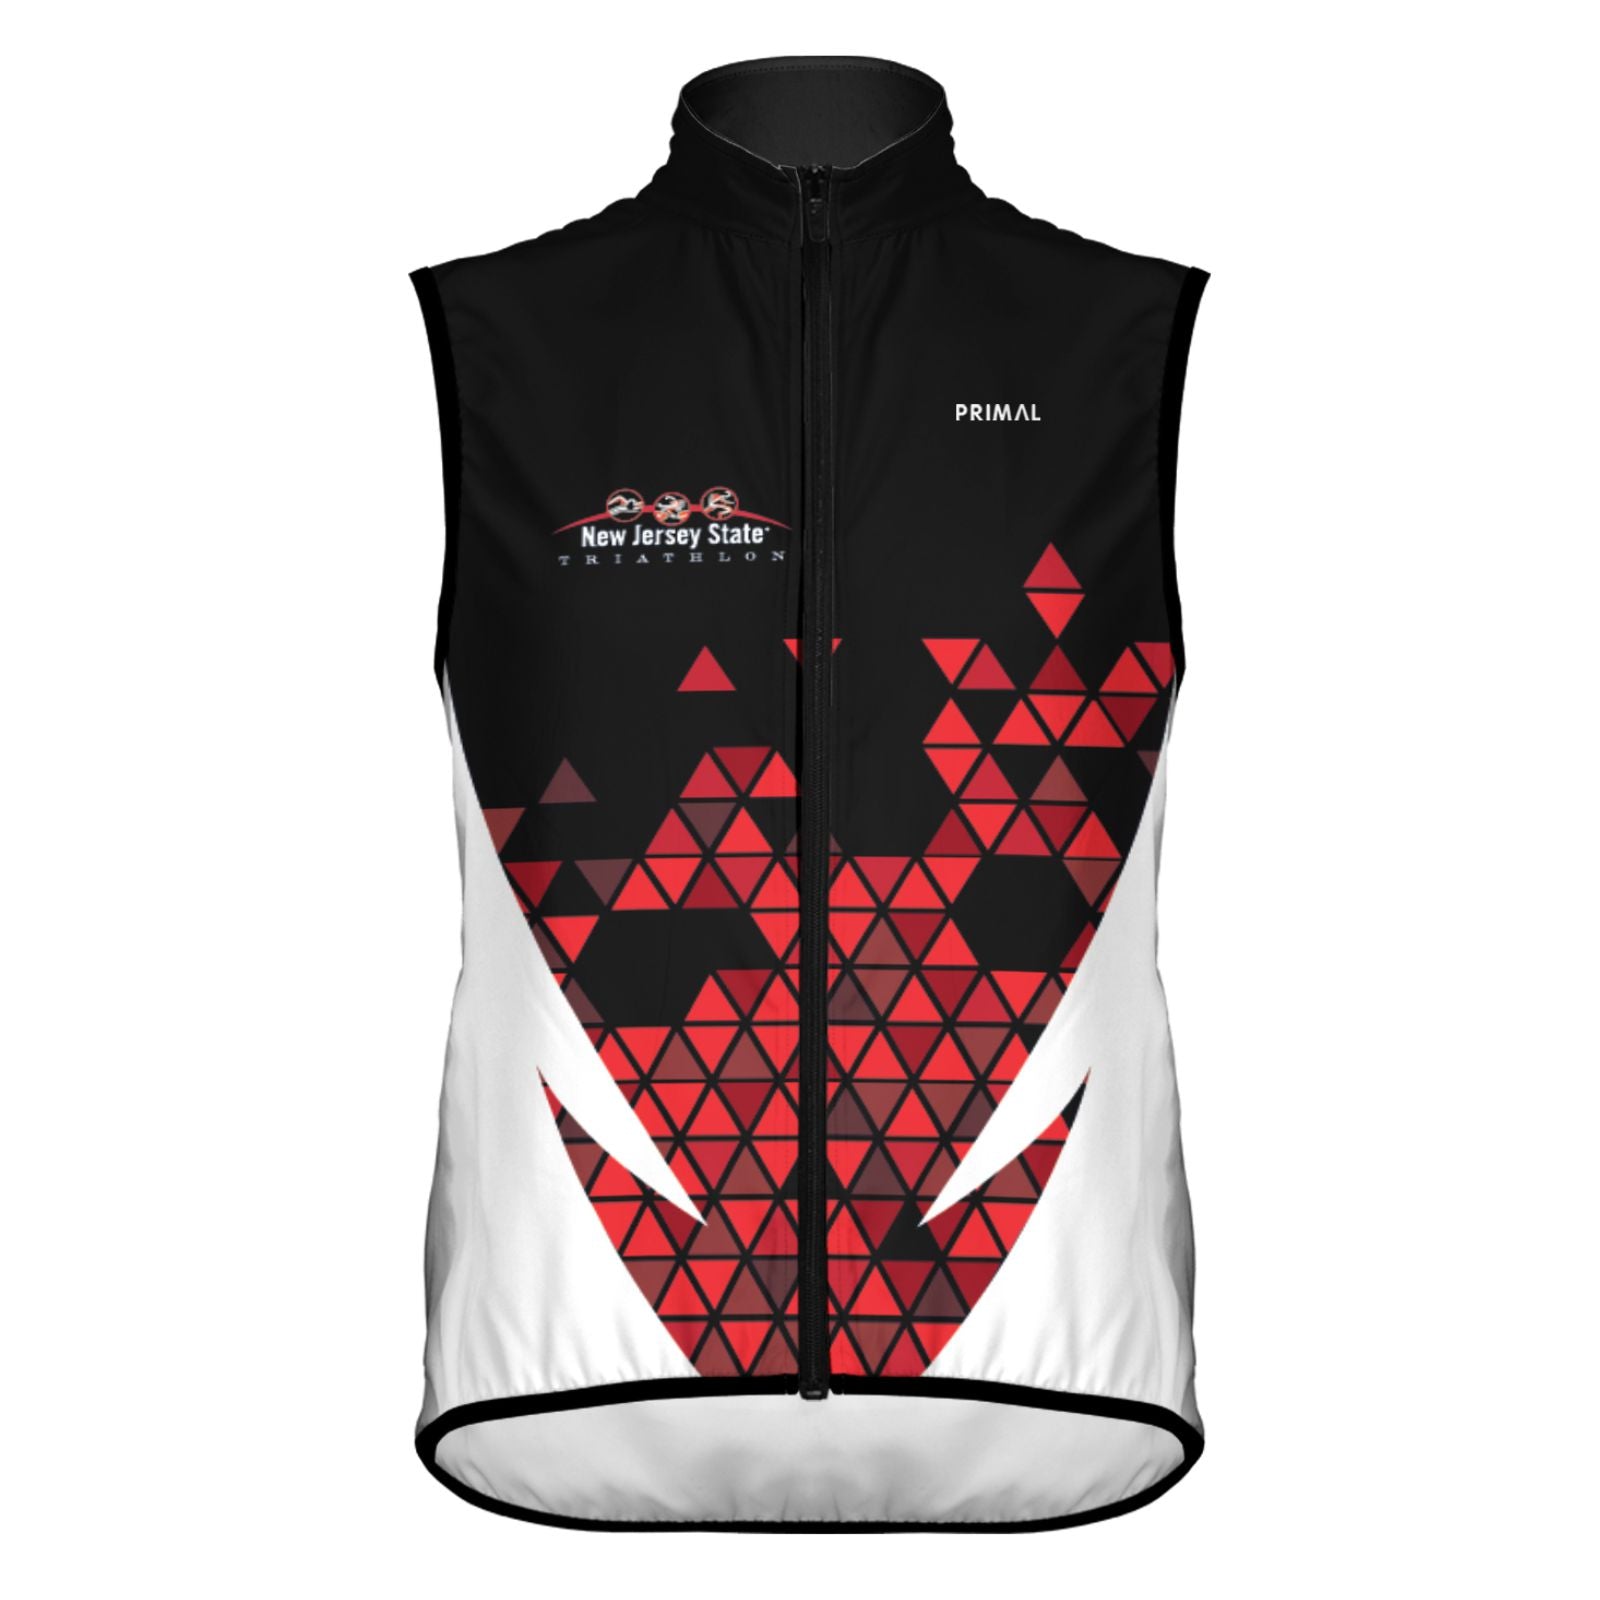 Men's Primal Zip Wind Vest - Black/Red - Triangles